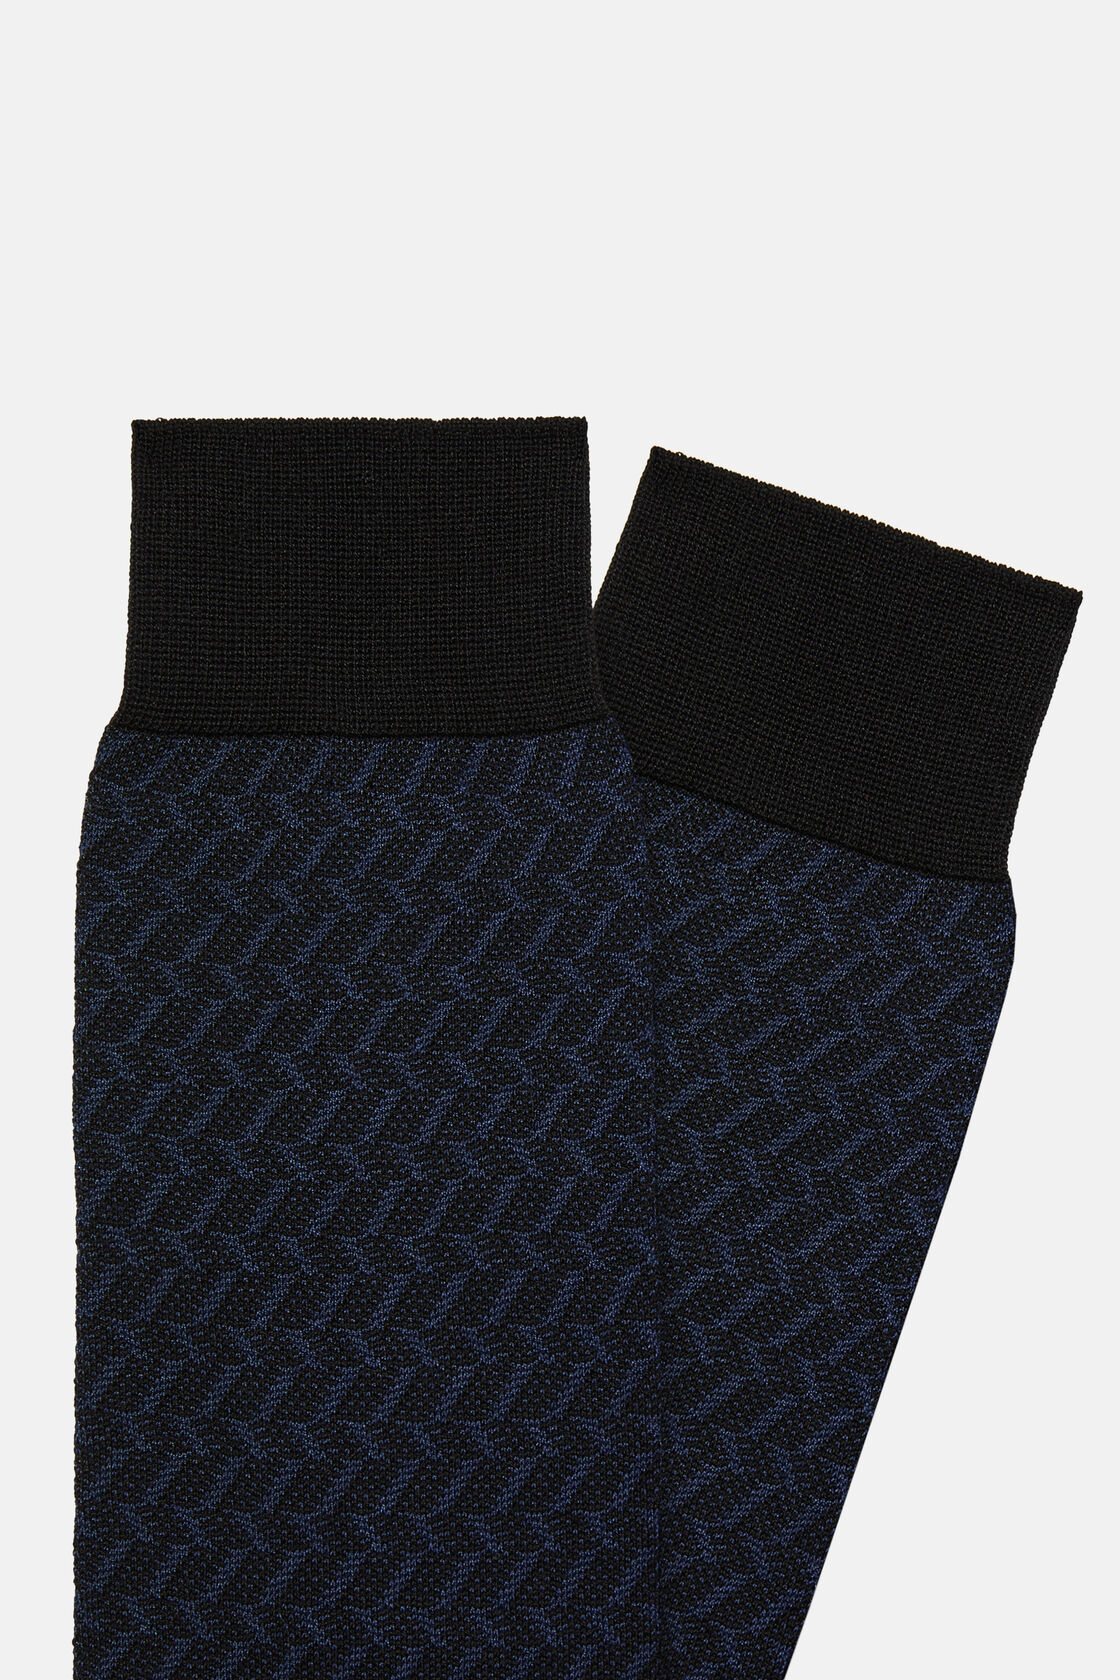 Κάλτσες με μικροσχέδιο από σύμμεικτο βαμβάκι, Navy blue, hi-res